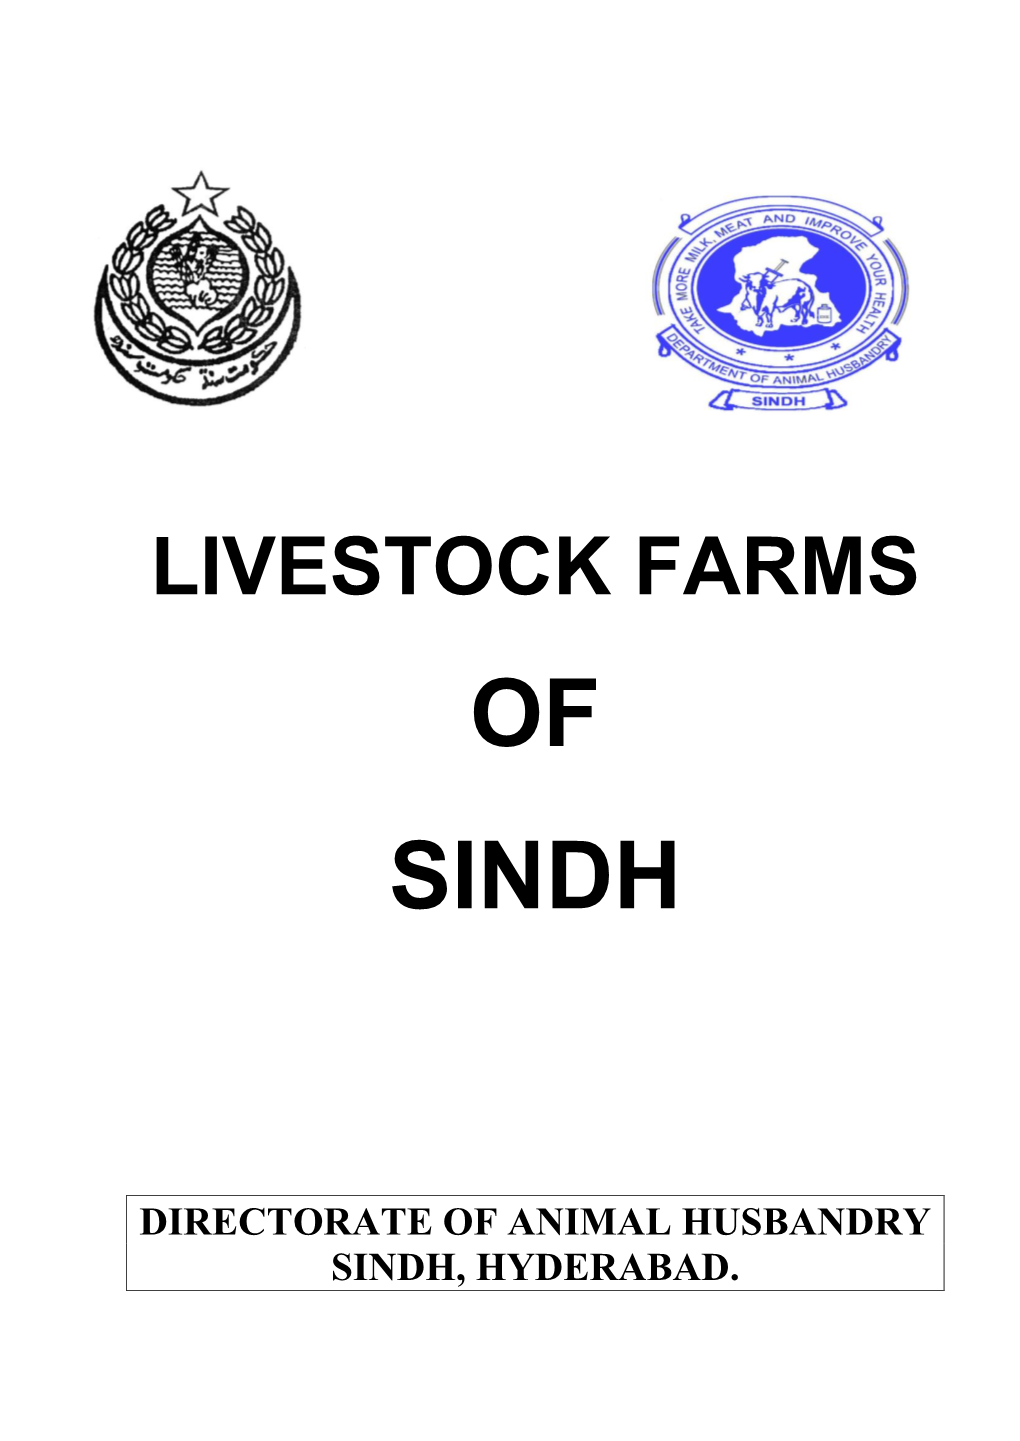 Red Sindhi Cattle Breeding Farm (Rscbf) Tando Muhammad Khan